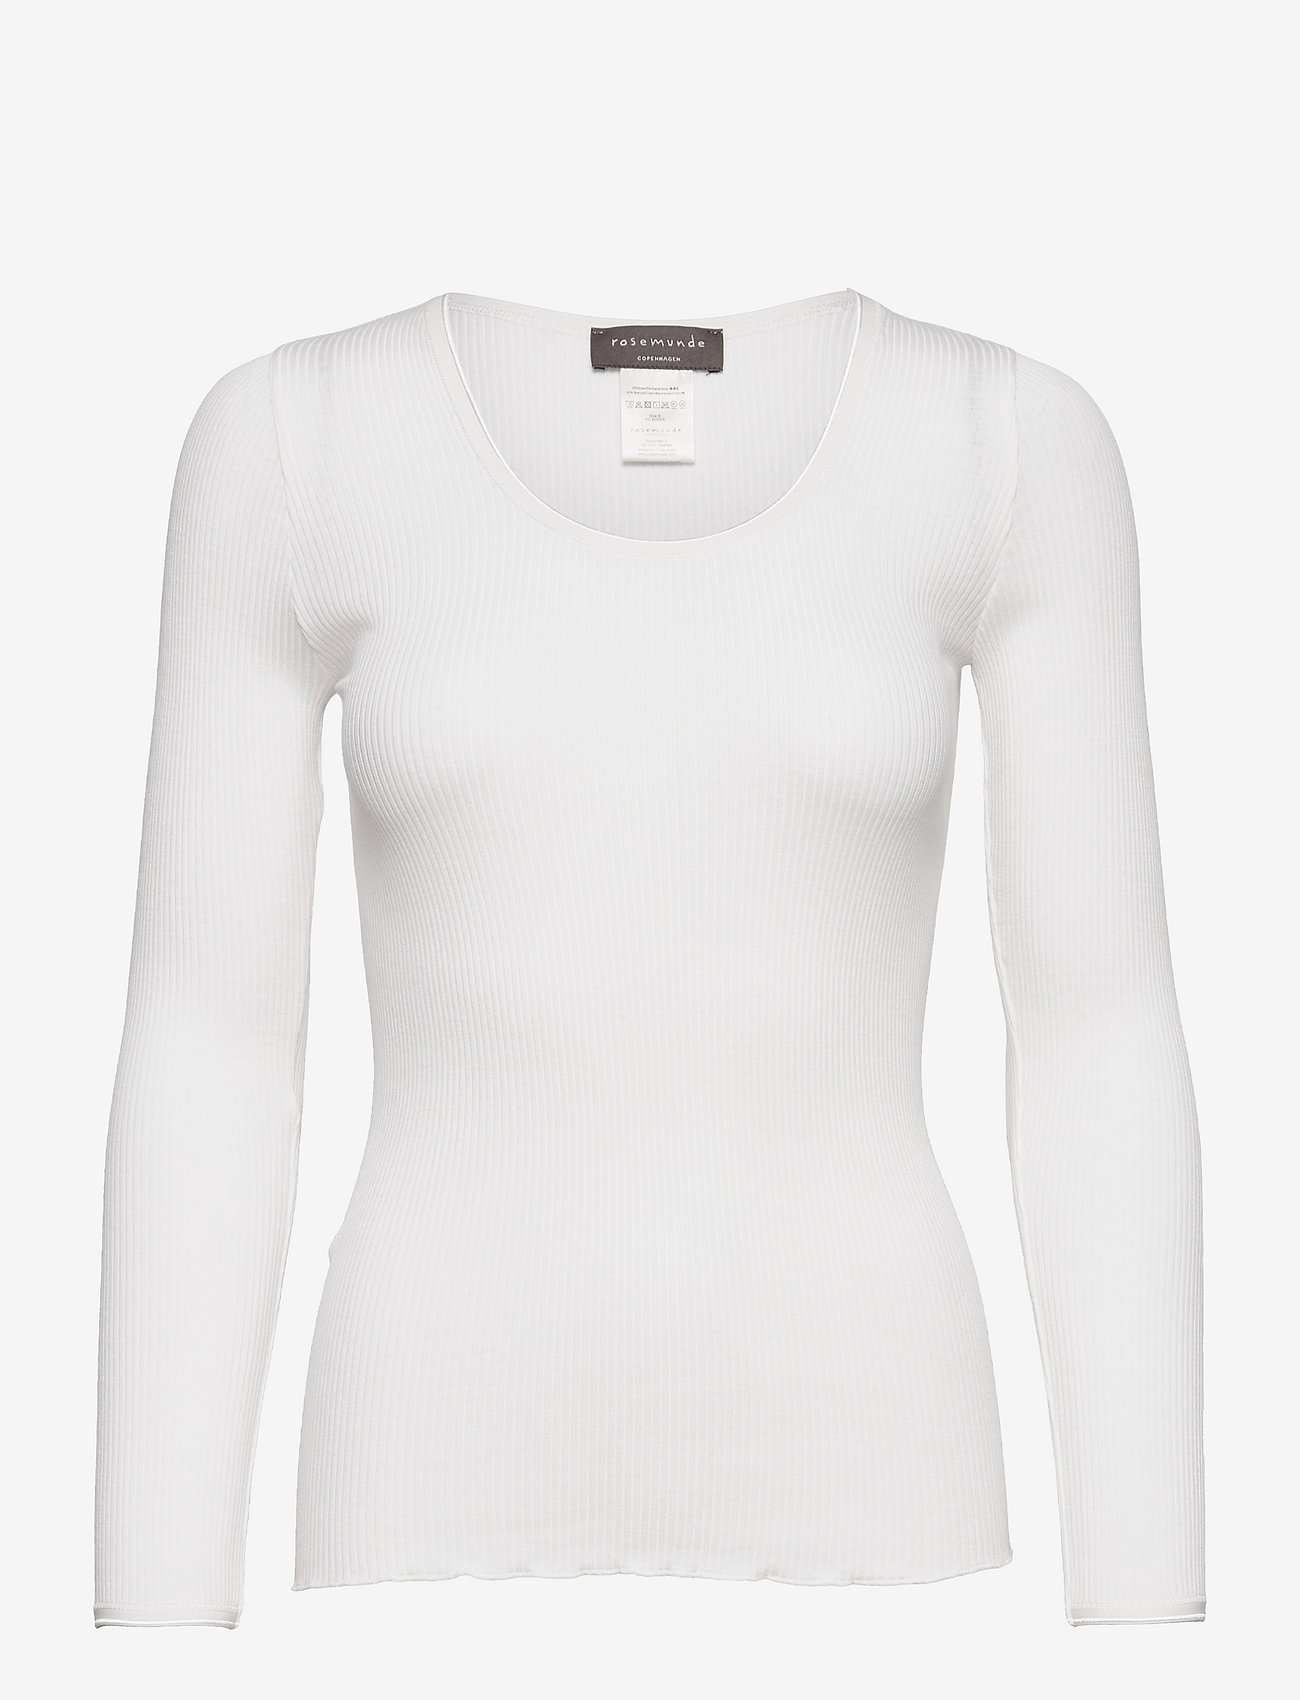 Rosemunde - Silk t-shirt - long-sleeved tops - new white - 0